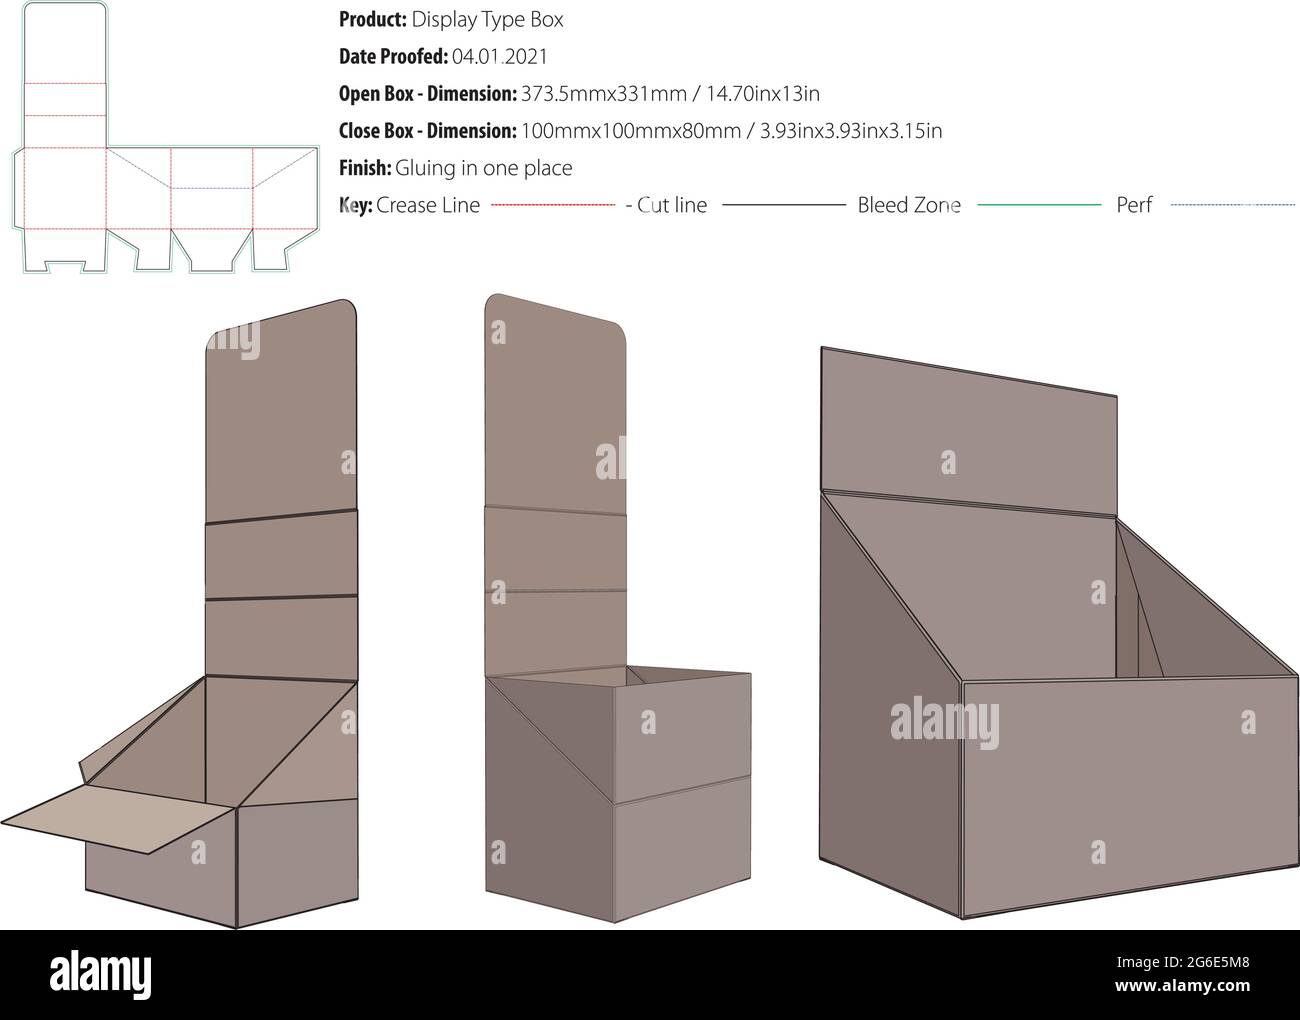 Display Typ Box Verpackung Design-Vorlage mit Perforation kleben an einem Ort Schnappverschluss Stanzform geschnitten - Vektor Stock Vektor